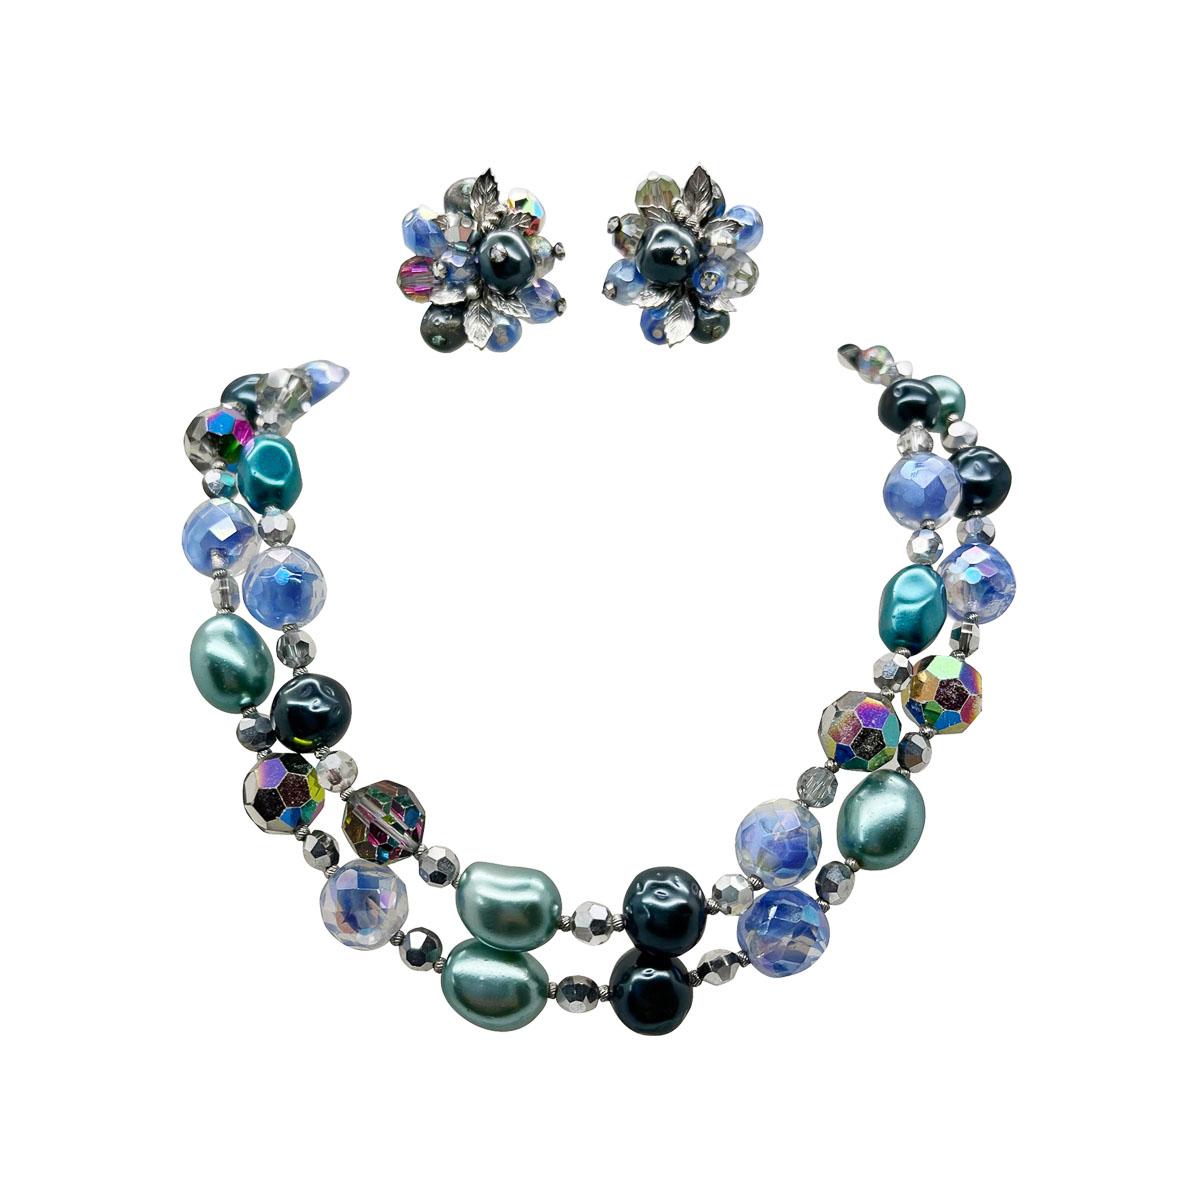 A Vintage Vendome Jewels of the Sea Beaded Necklace, Armband und Ohrringe. Herrliche, zarte Perlen- und Kristalltöne vereinen sich zu einem hübschen Schmuckstück. Dieser in den 1940er Jahren gefertigte Vendome-Anzug hat bereits die Zeit überdauert